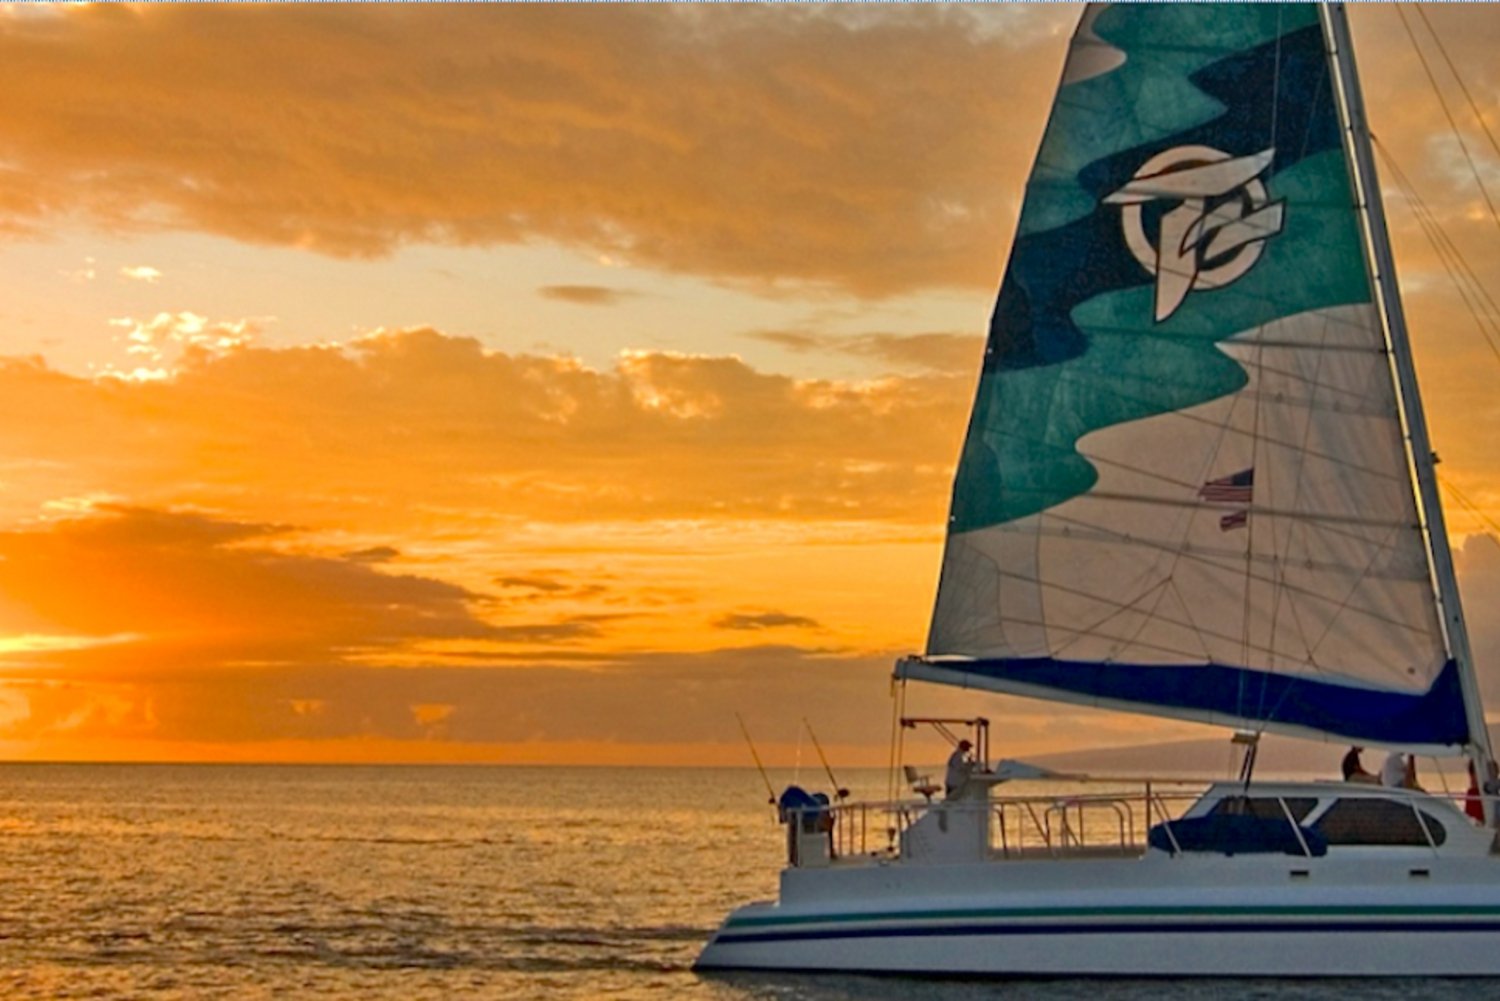 sunset cruise in maui hawaii